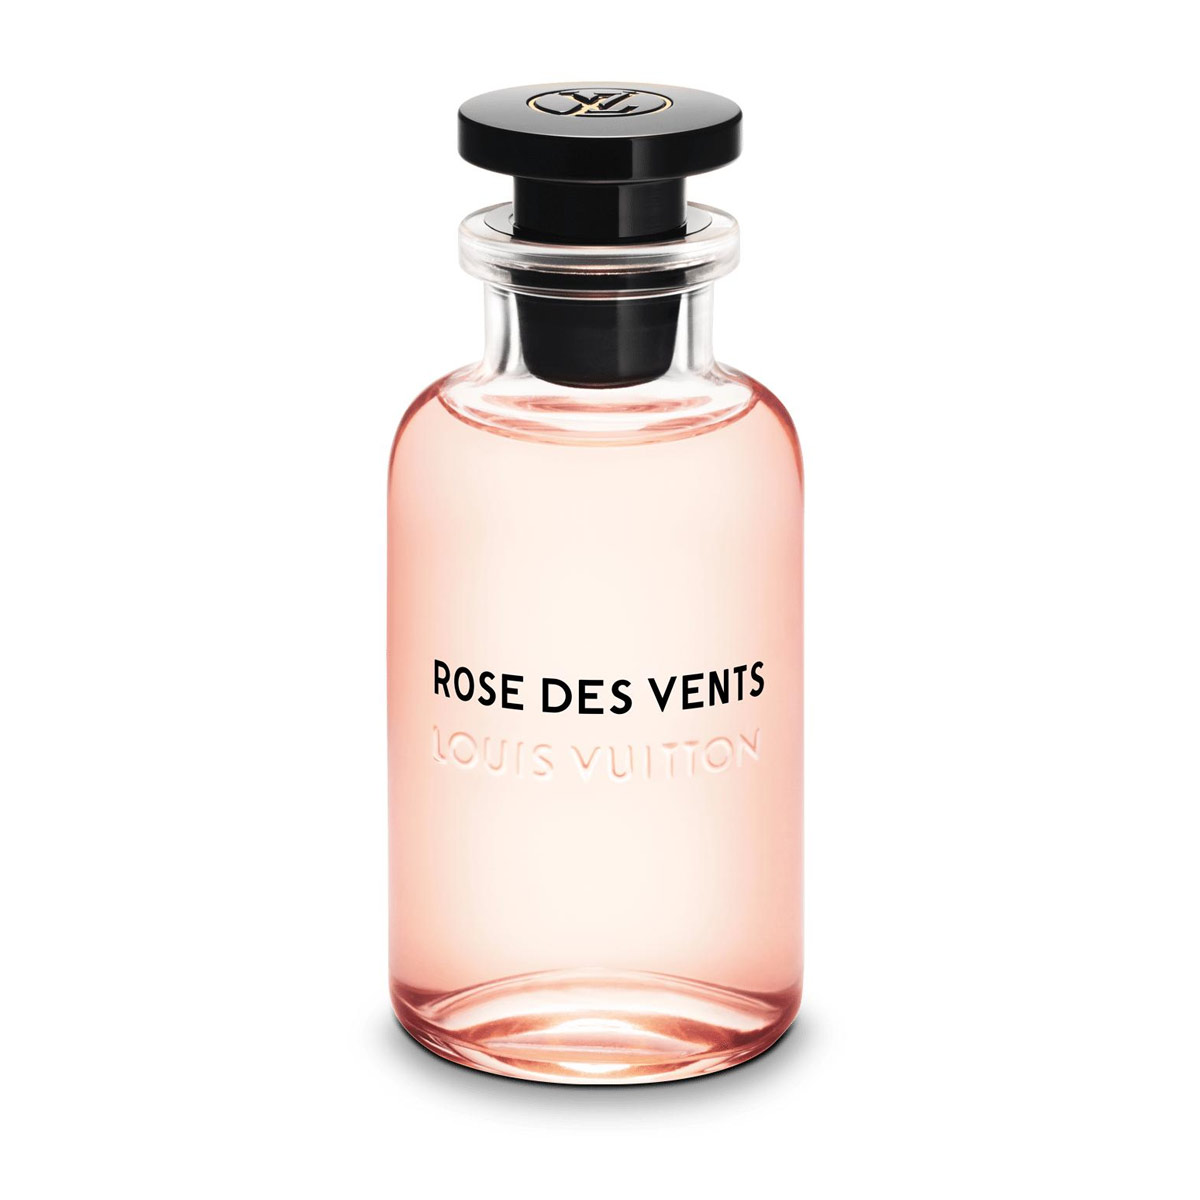 Champ de Rose Jacques Yves ▷ (Louis Vuitton ROSE DES VENTS) ▷ Arabskie  perfumy 🥇 100ml